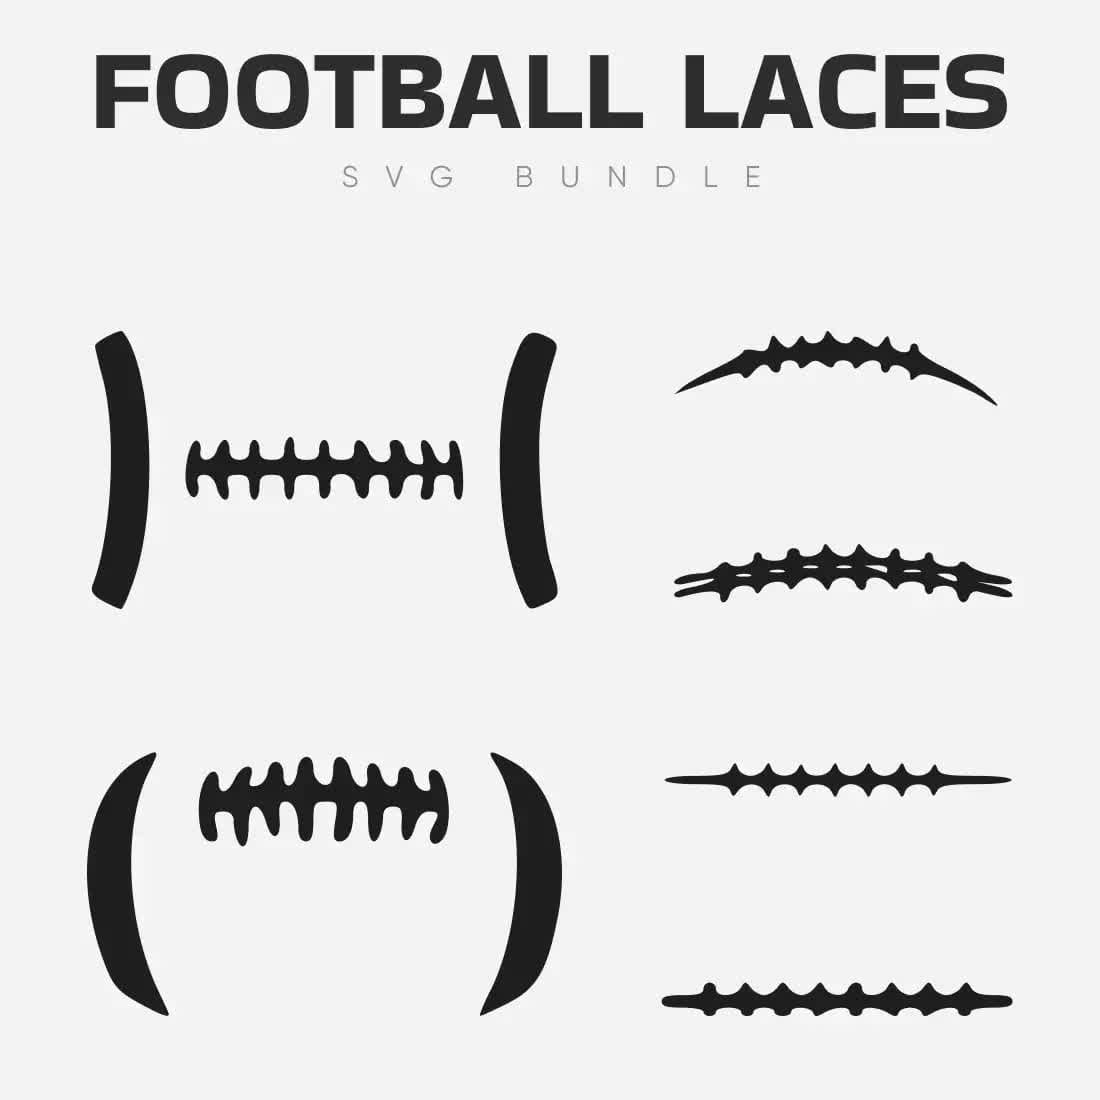 Football Laces SVG Bundle Preview 2.